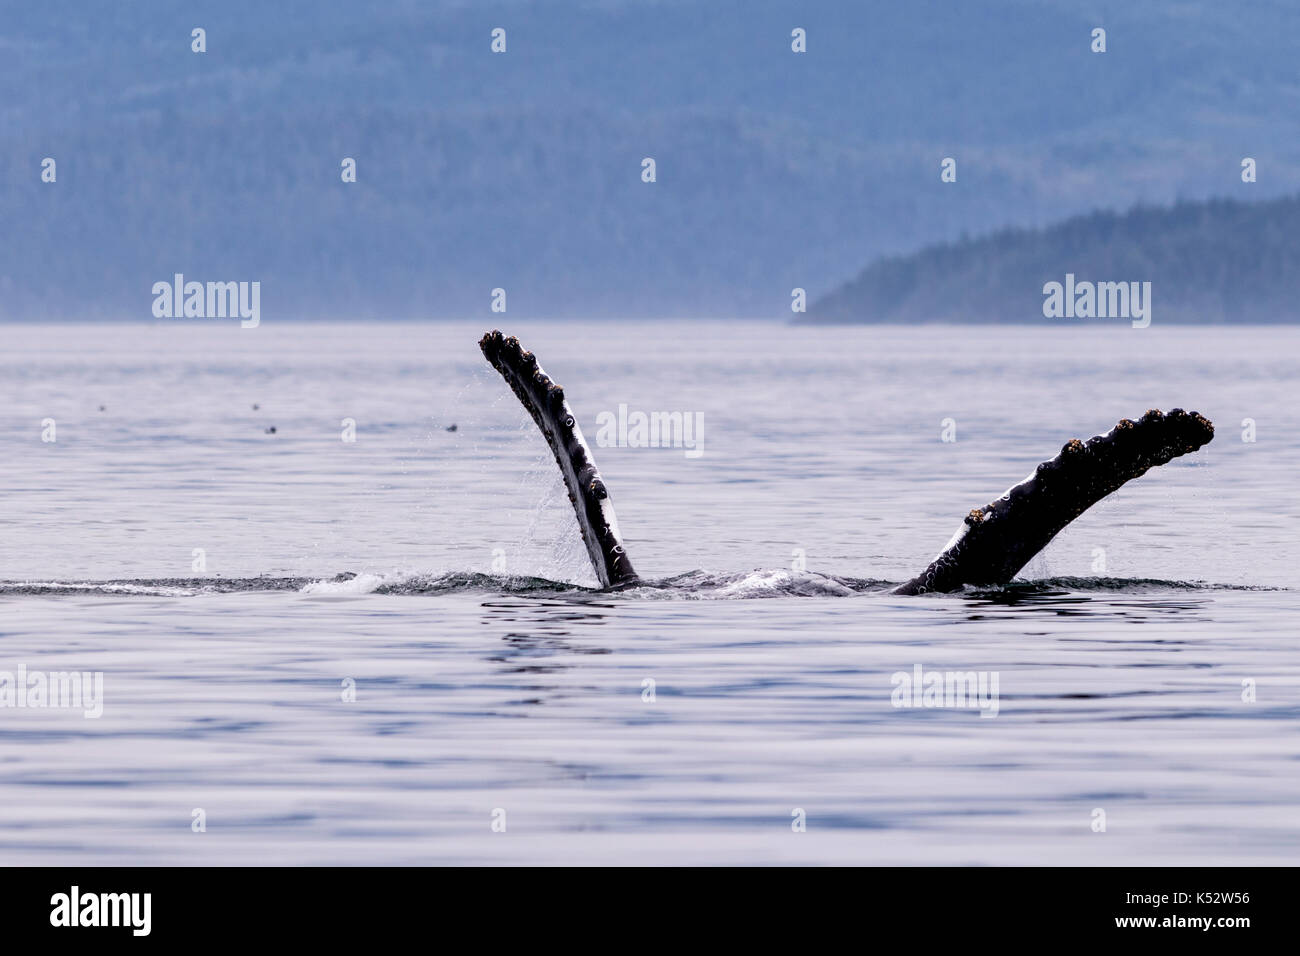 La ballena jorobada en la espalda saludando con sus aletas, broughton archipiélago provincial fuera del parque marino de la isla de Vancouver, British Columbia, Canadá. Foto de stock